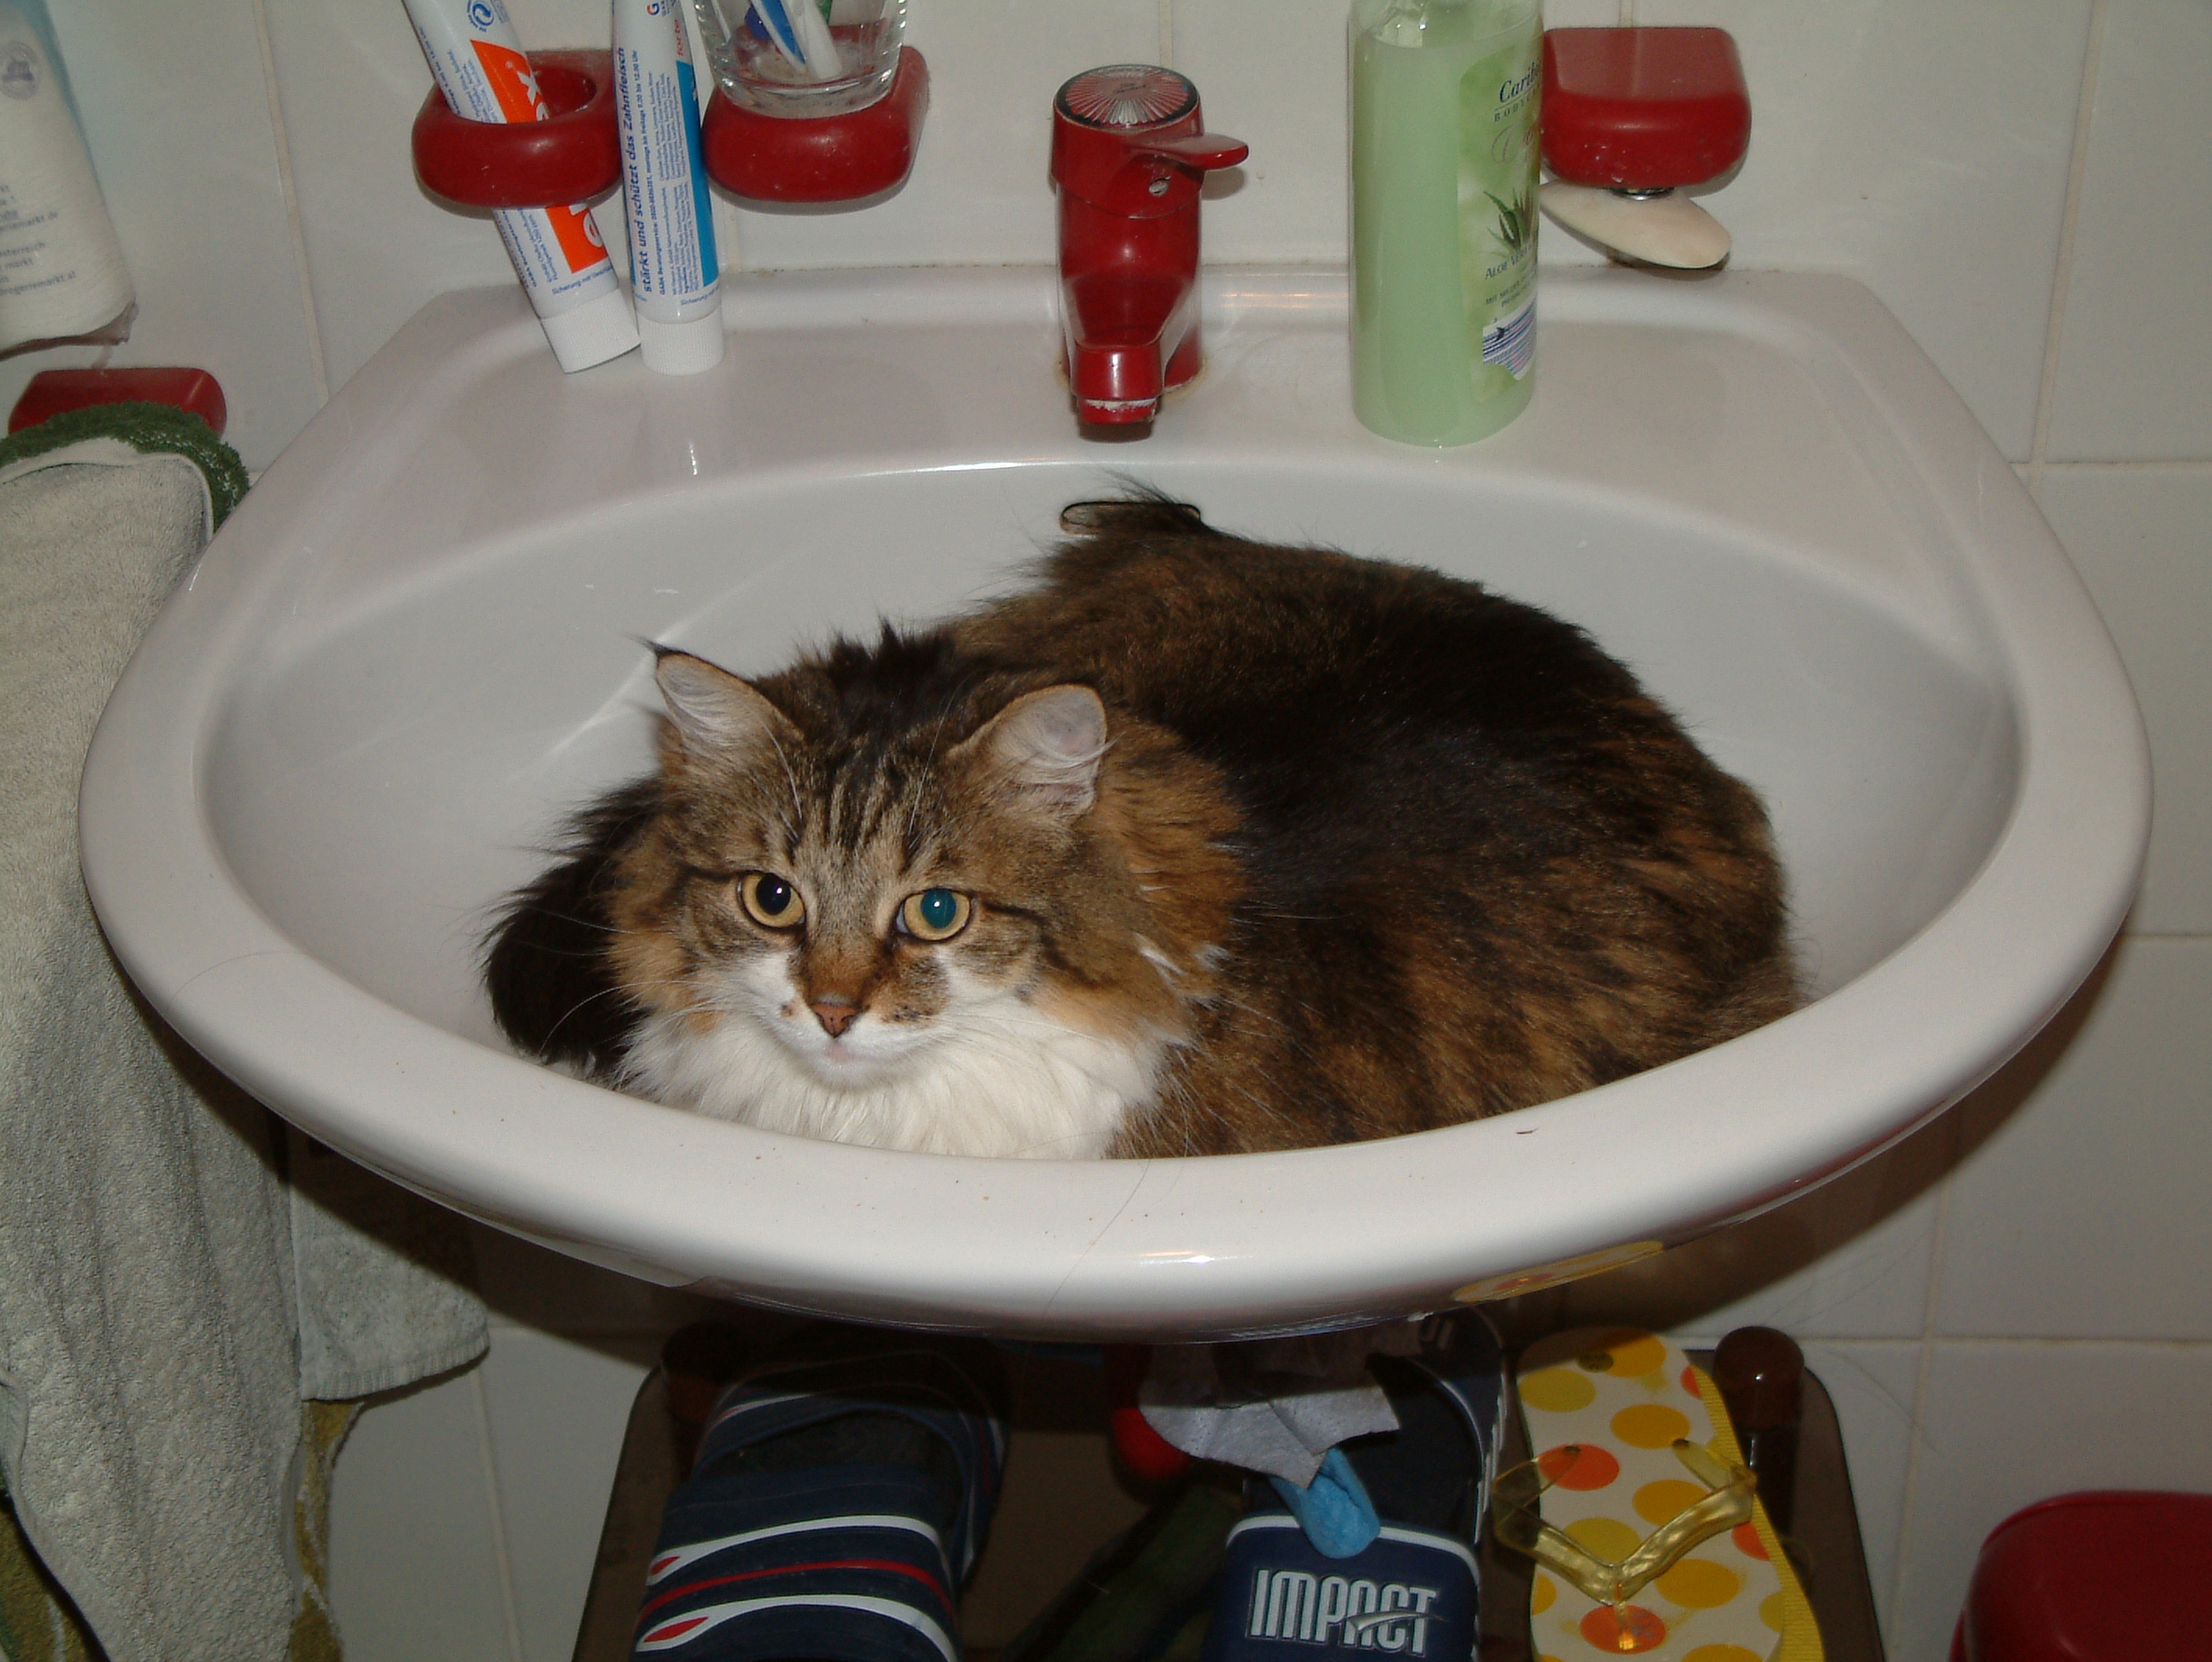 Cat in basin